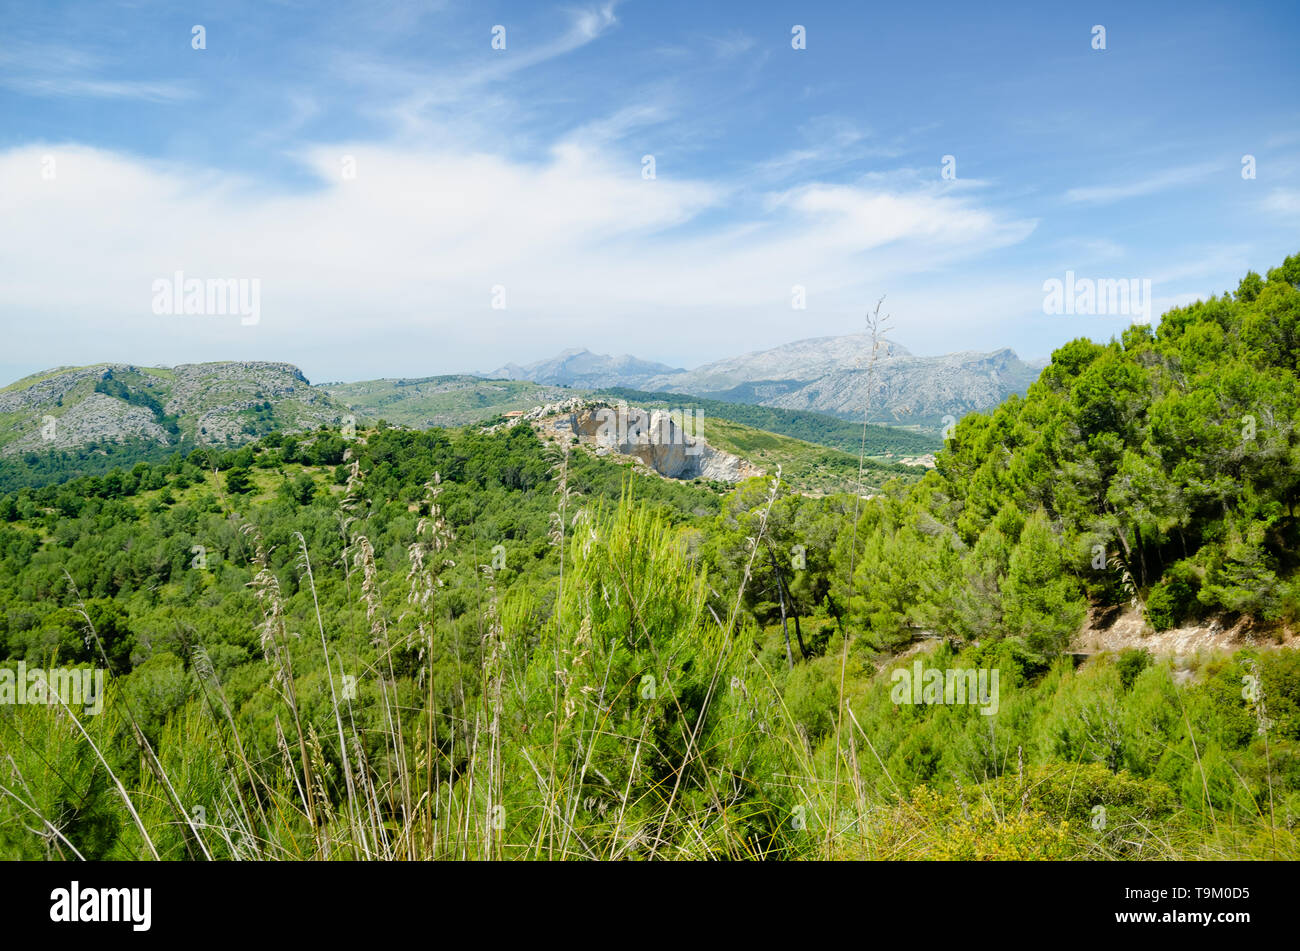 Eine Landschaft Bild der robuste und doch wunderschön, hill Gelände in Mallorca, Spanien. Mallorca ist eine der balearischen Archipels. Stockfoto